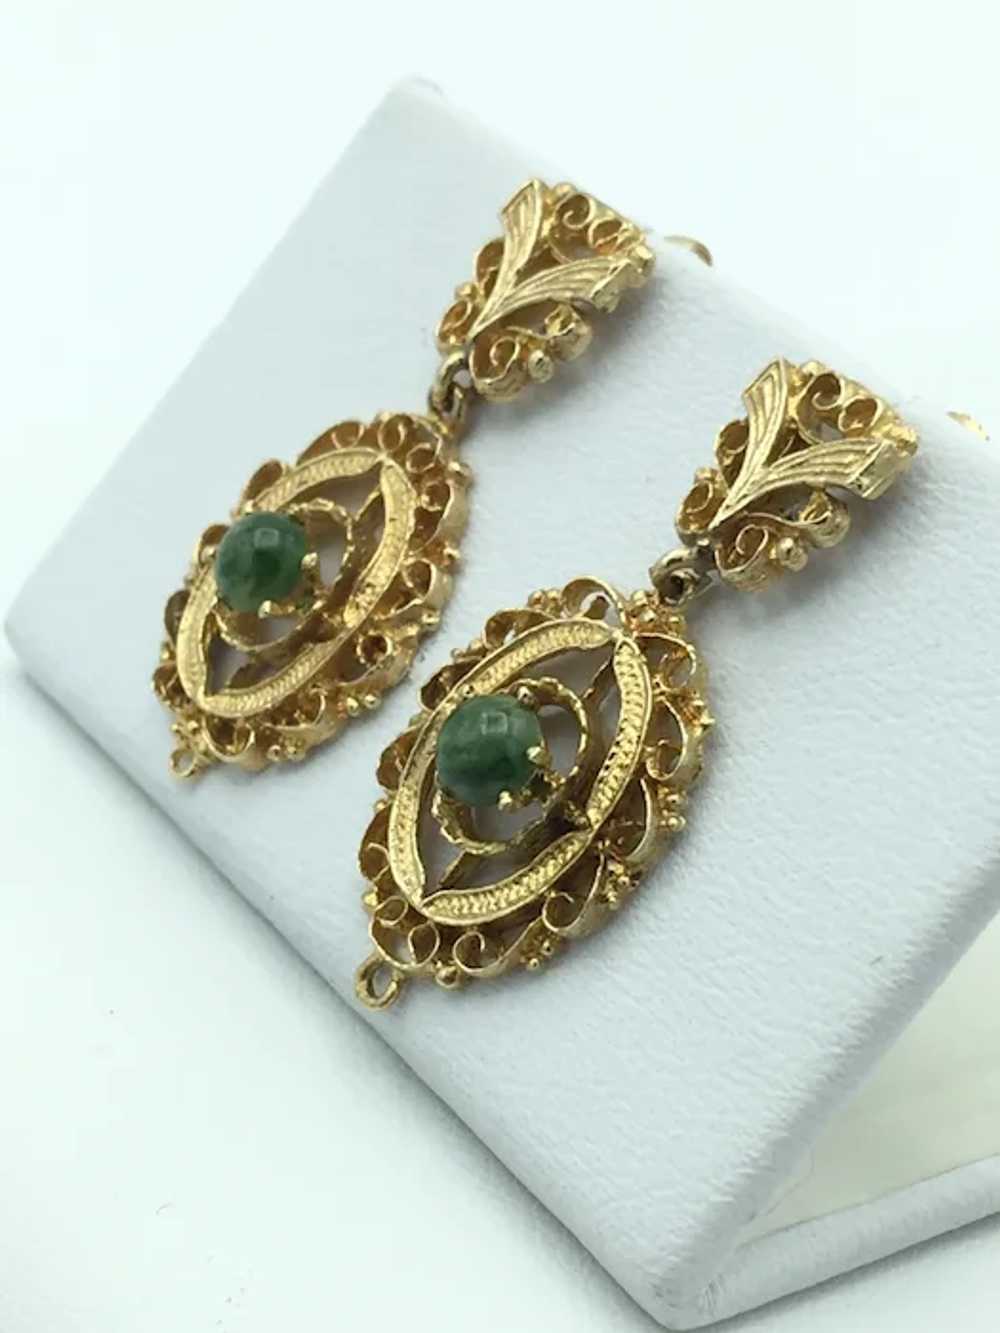 14K Semi-Precious Stone Earrings - image 2